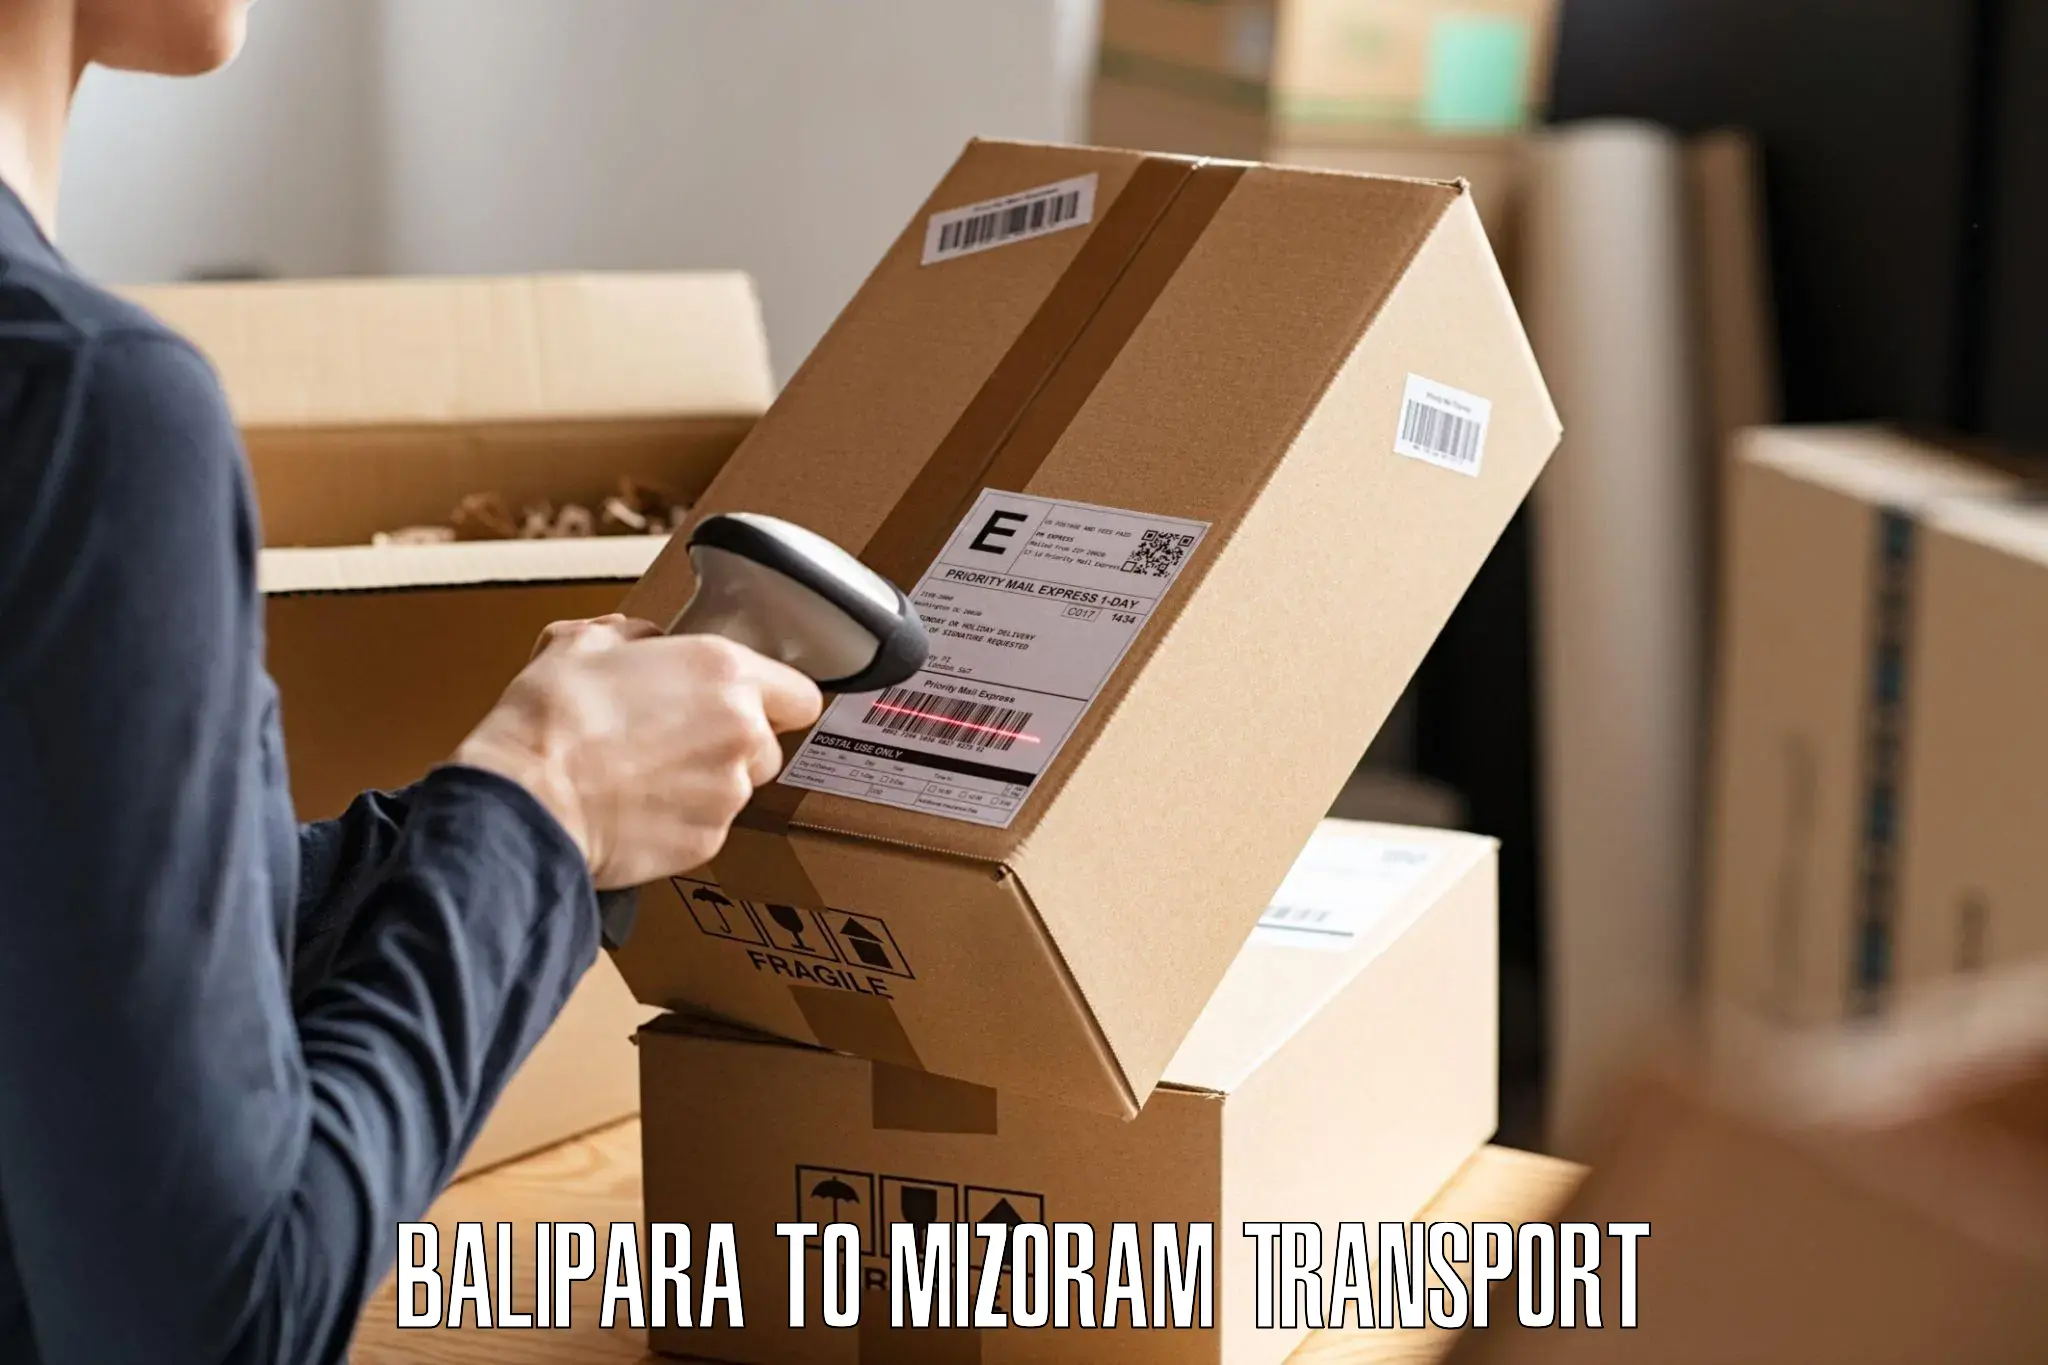 Furniture transport service Balipara to Thenzawl